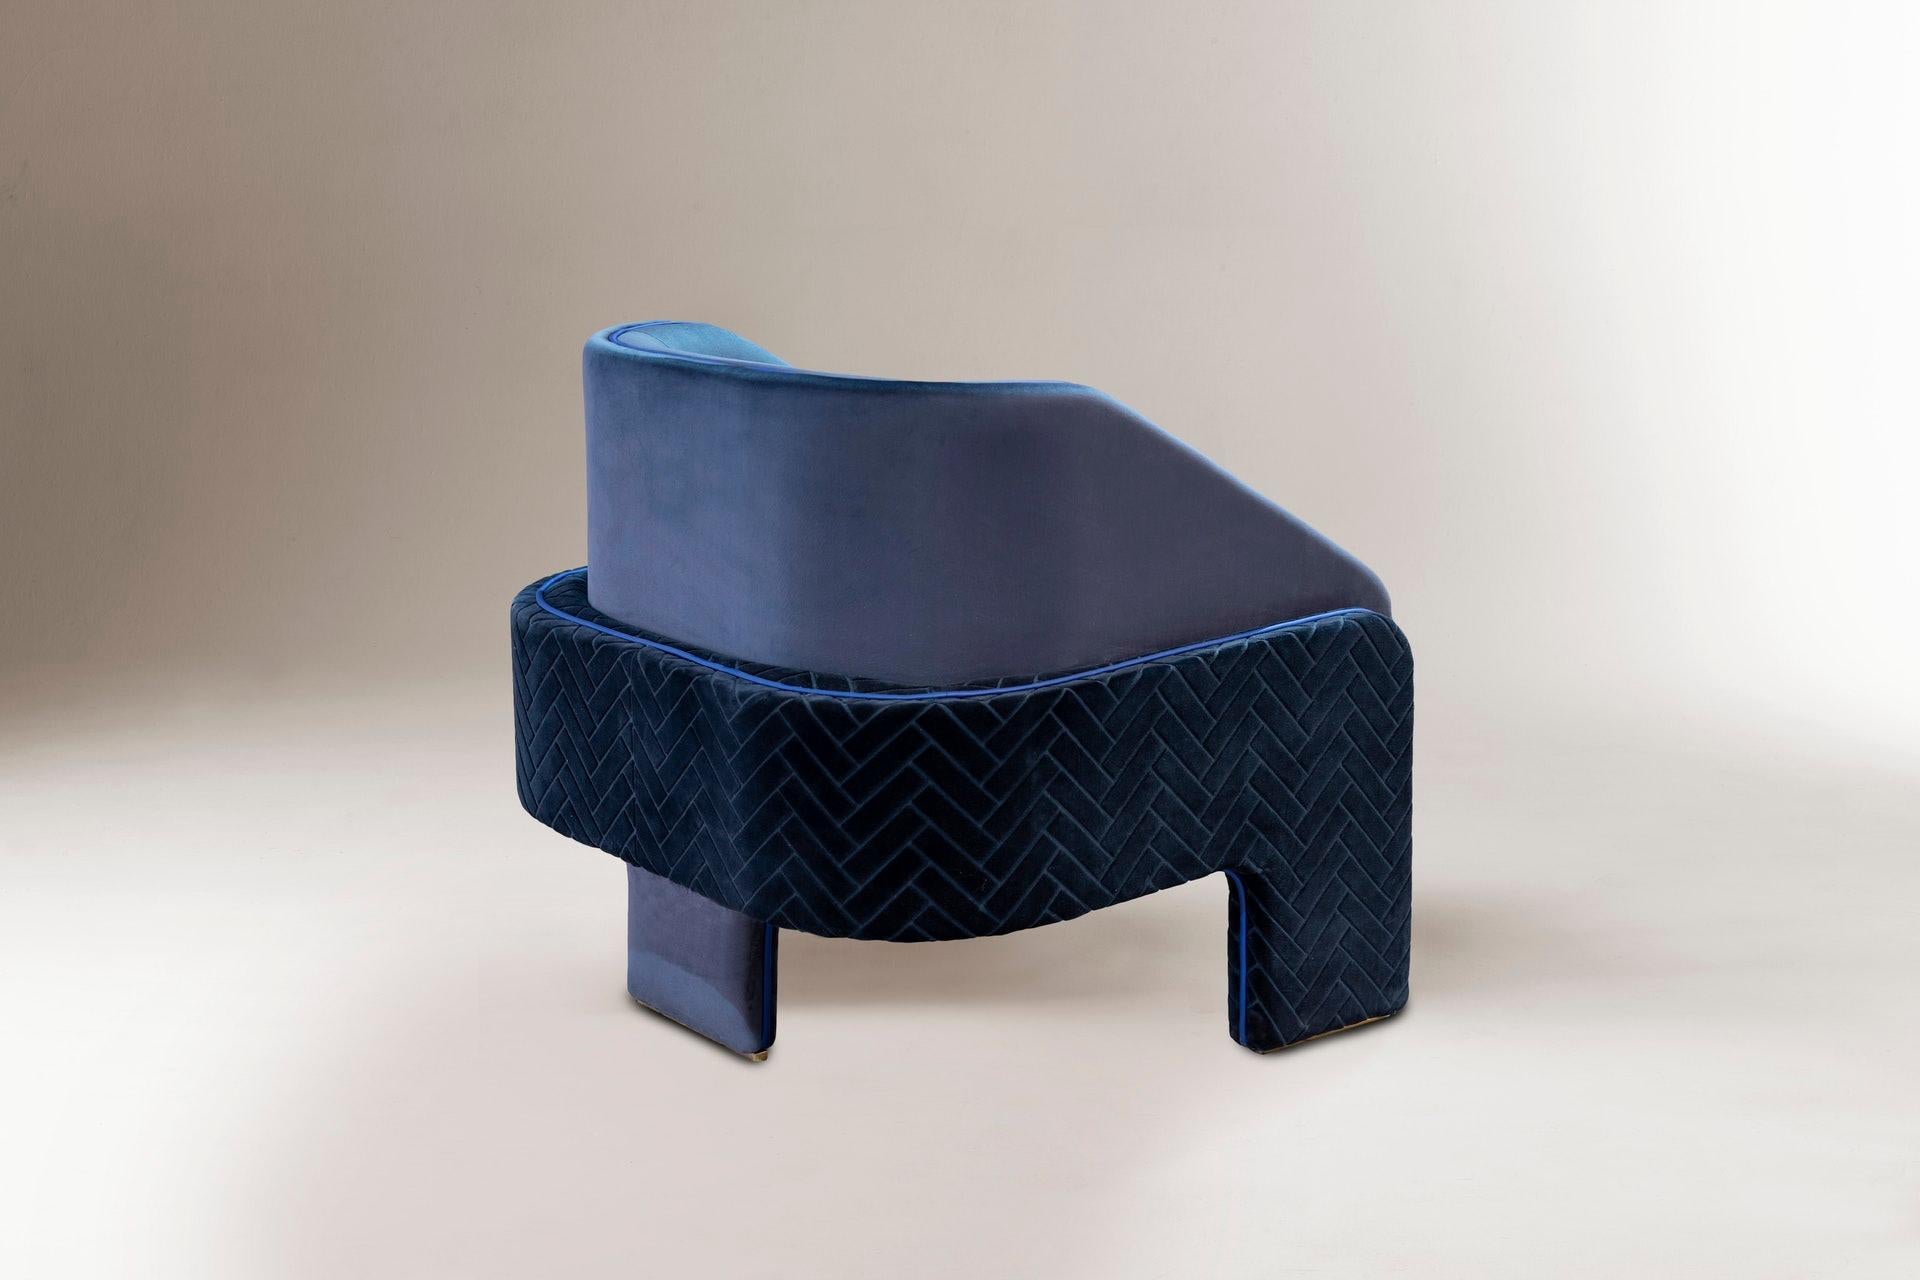 Der Sessel L'Unité ist proportional und skulptural, perfekt auf den menschlichen Maßstab abgestimmt. Es versammelt starke, gepolsterte Formen, die leicht auf eleganten Ständern ruhen. Ein Werk, das das Auge und die Fantasie anregt, inspiriert vom